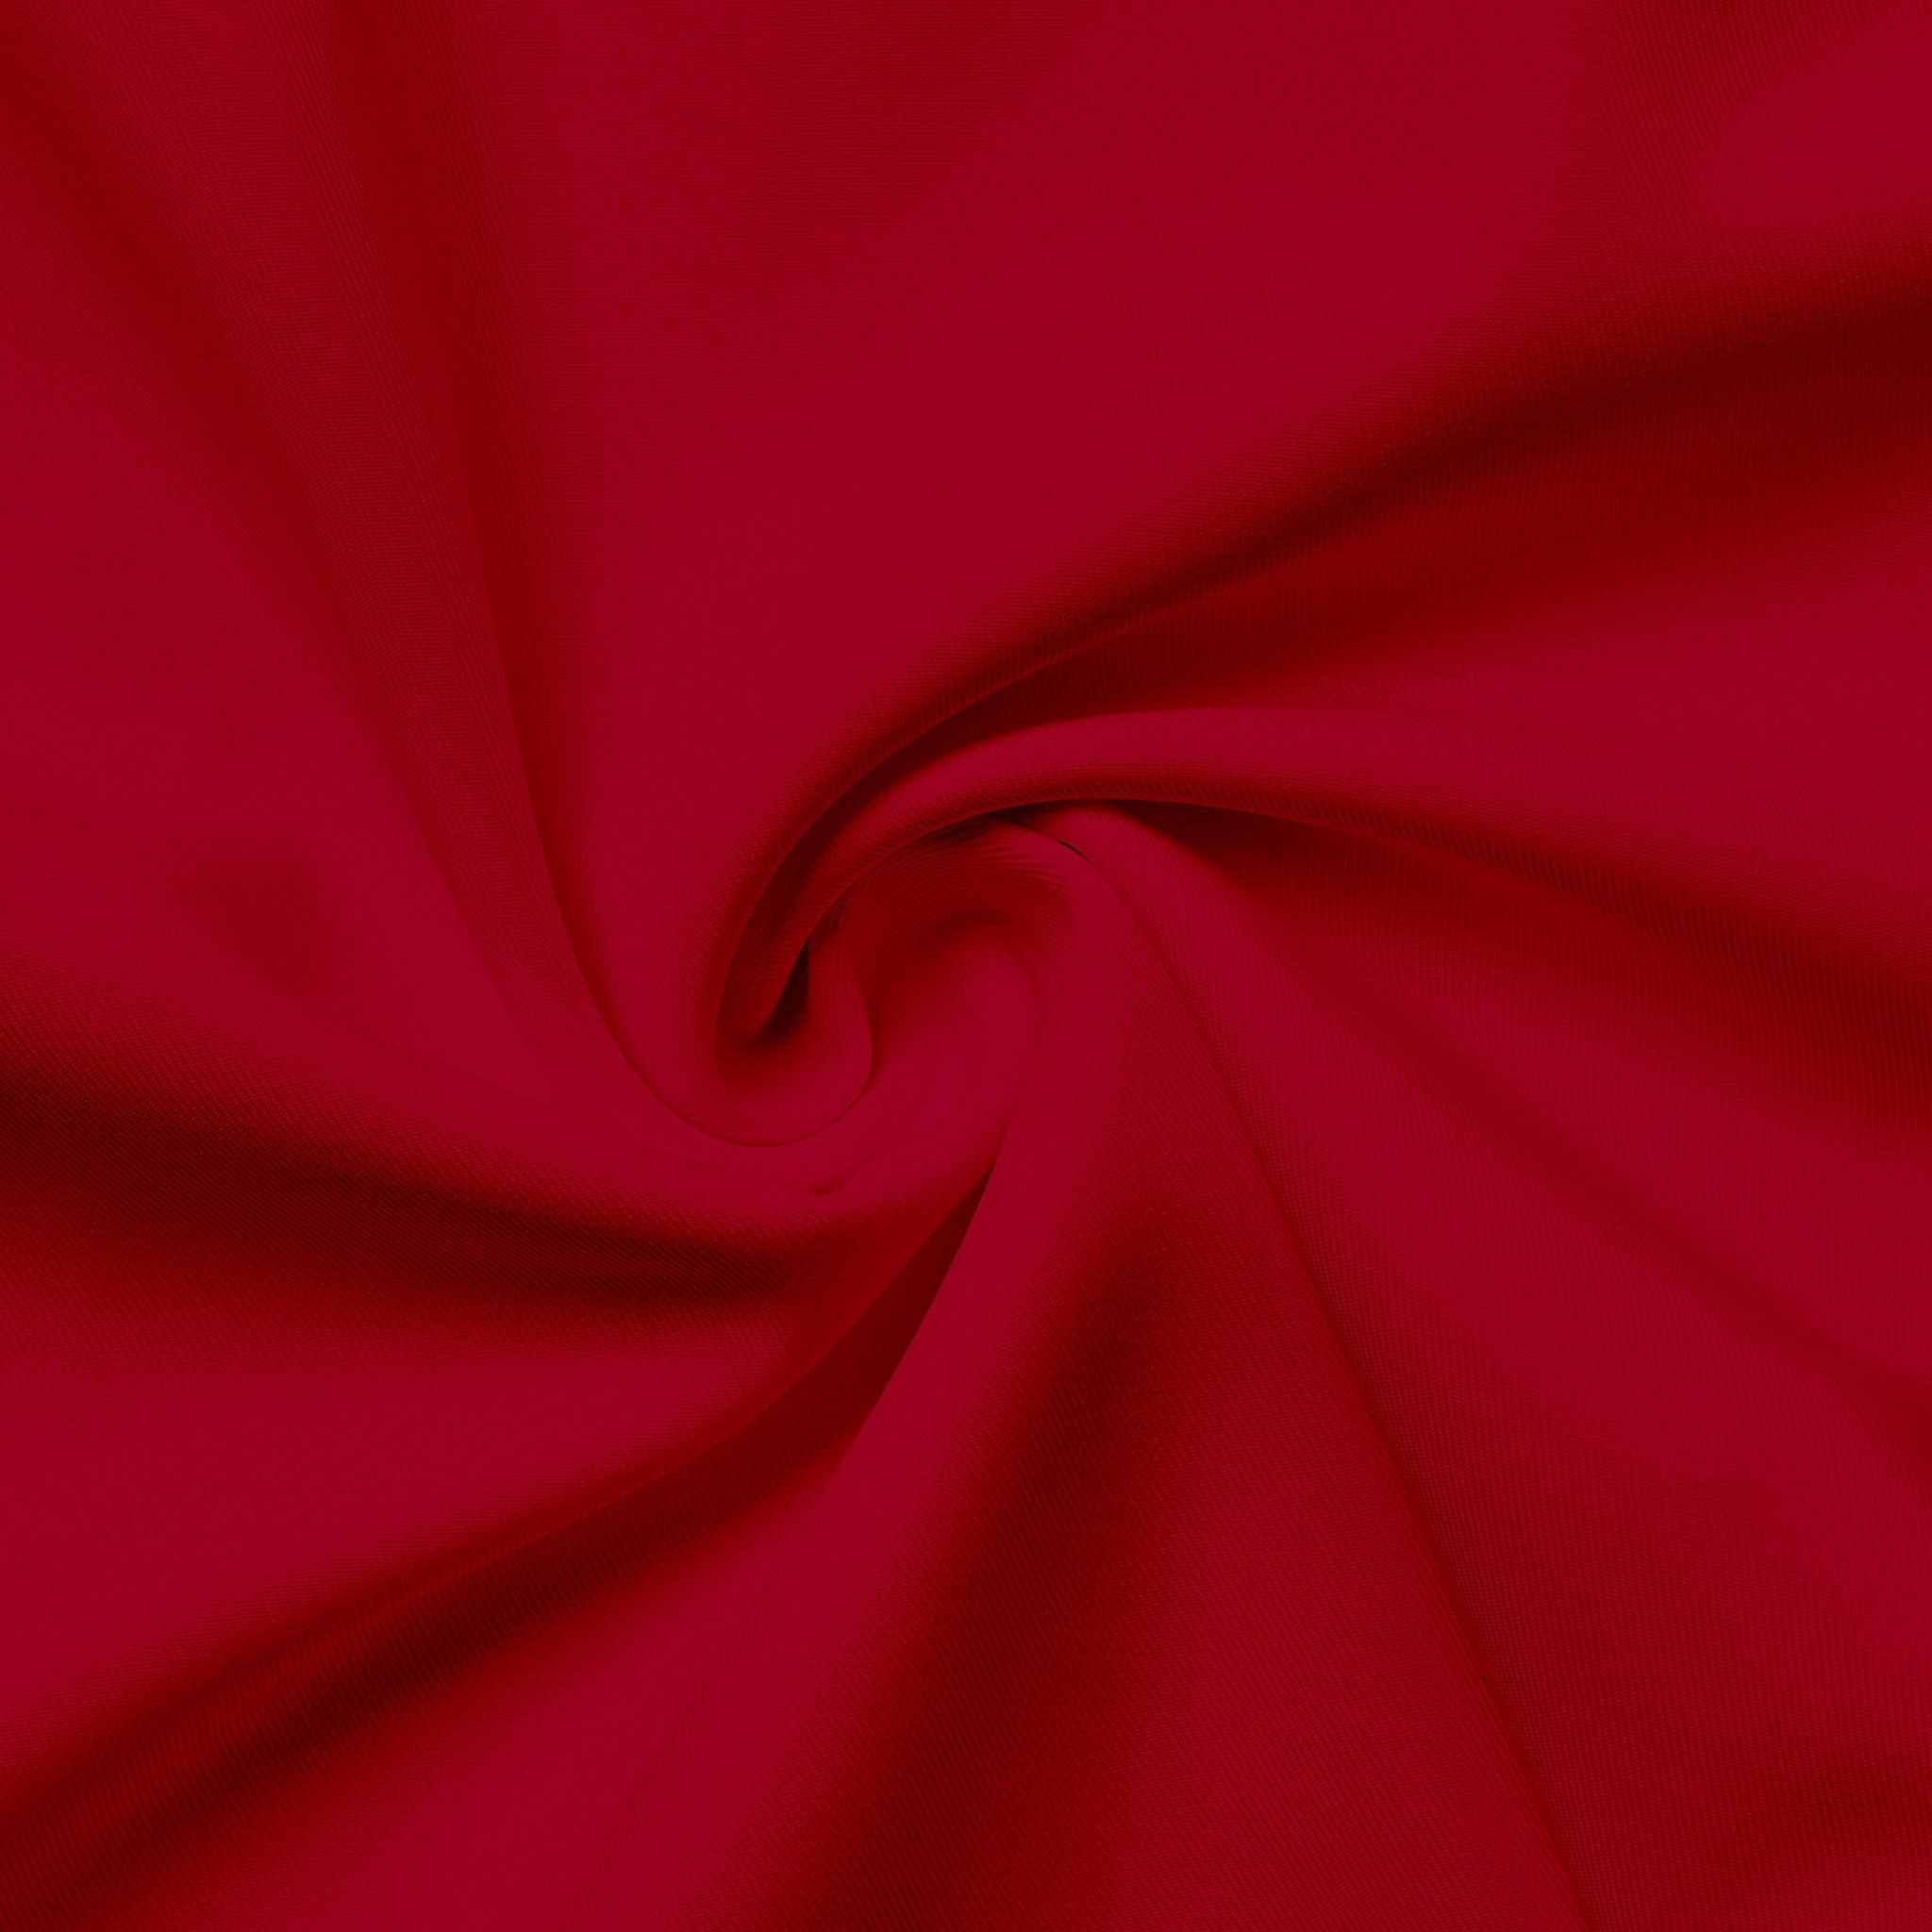 Áo thun Ancient Asia màu đỏ đậm với thiết kế cổ điển sẽ khiến bạn nổi bật và tự tin hơn. Chất liệu cao cấp và in ấn chất lượng giúp sản phẩm luôn giữ được sự bền đẹp và độ phong cách. Hãy trải nghiệm sự thoải mái và thời trang với chiếc áo thun này.